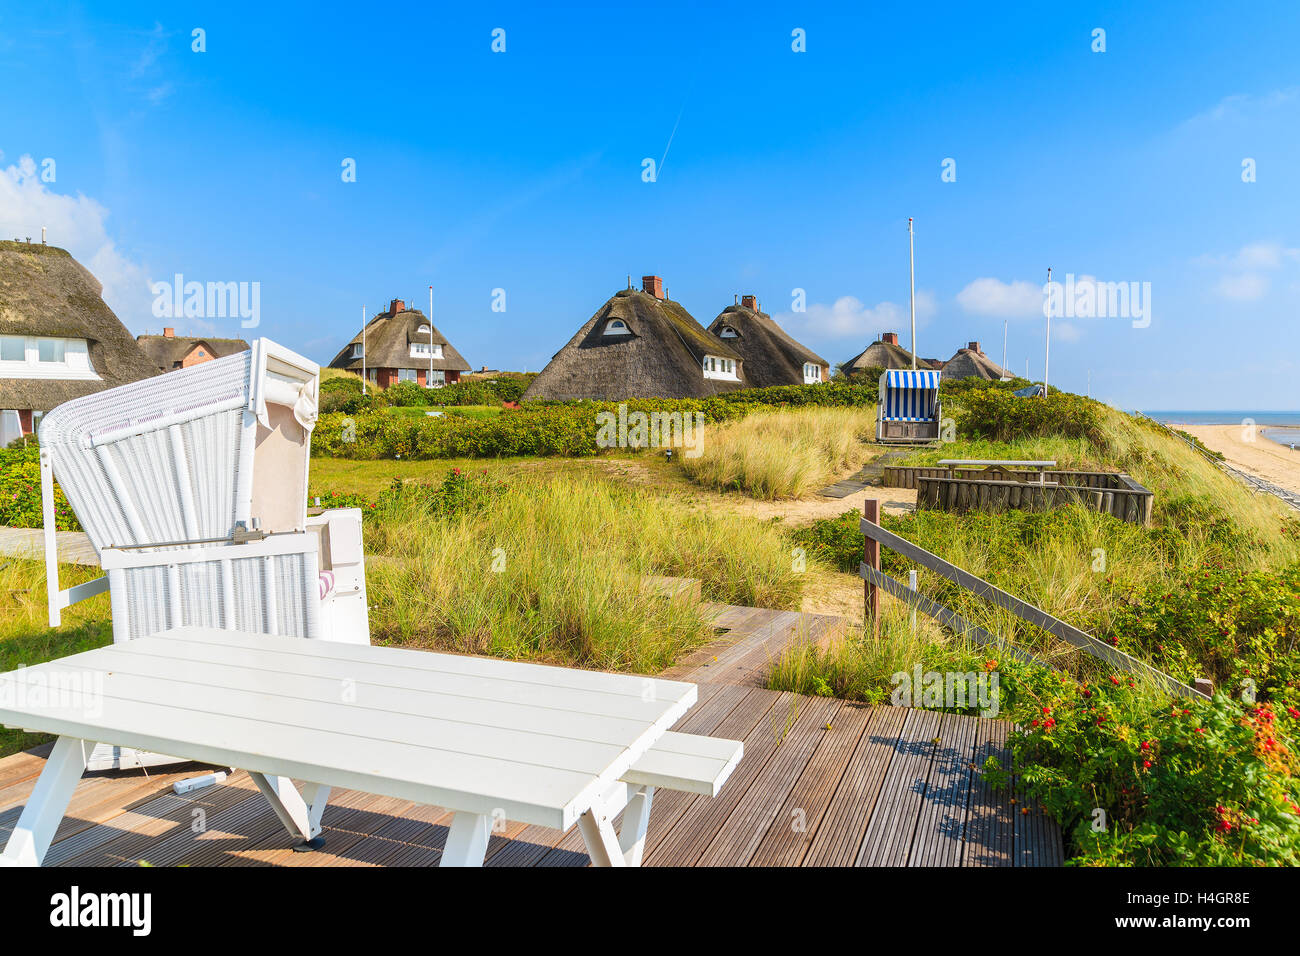 Beach chair and table on coast of Sylt island near List village, Germany Stock Photo